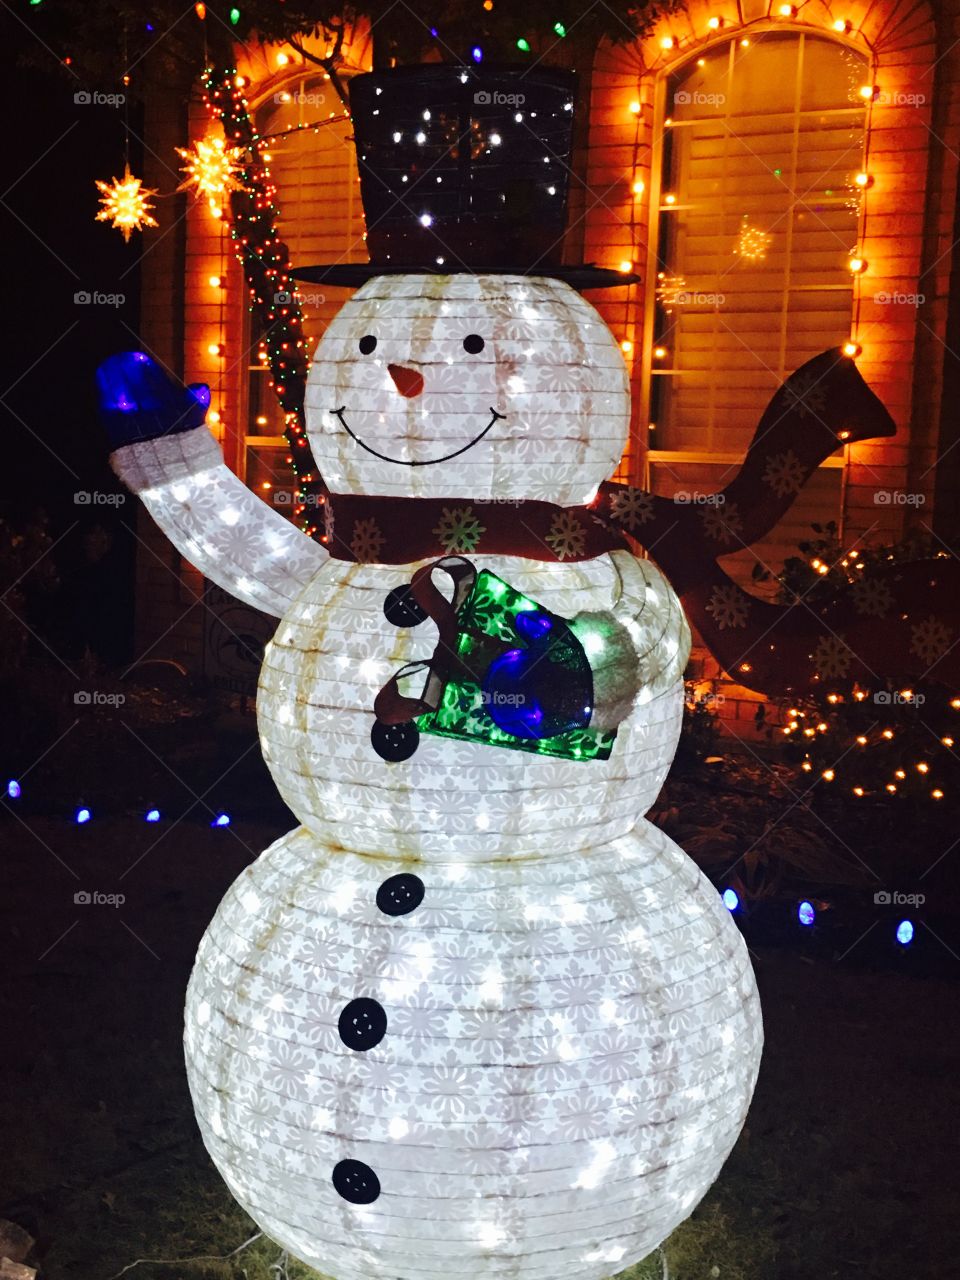 Glowing snowman
